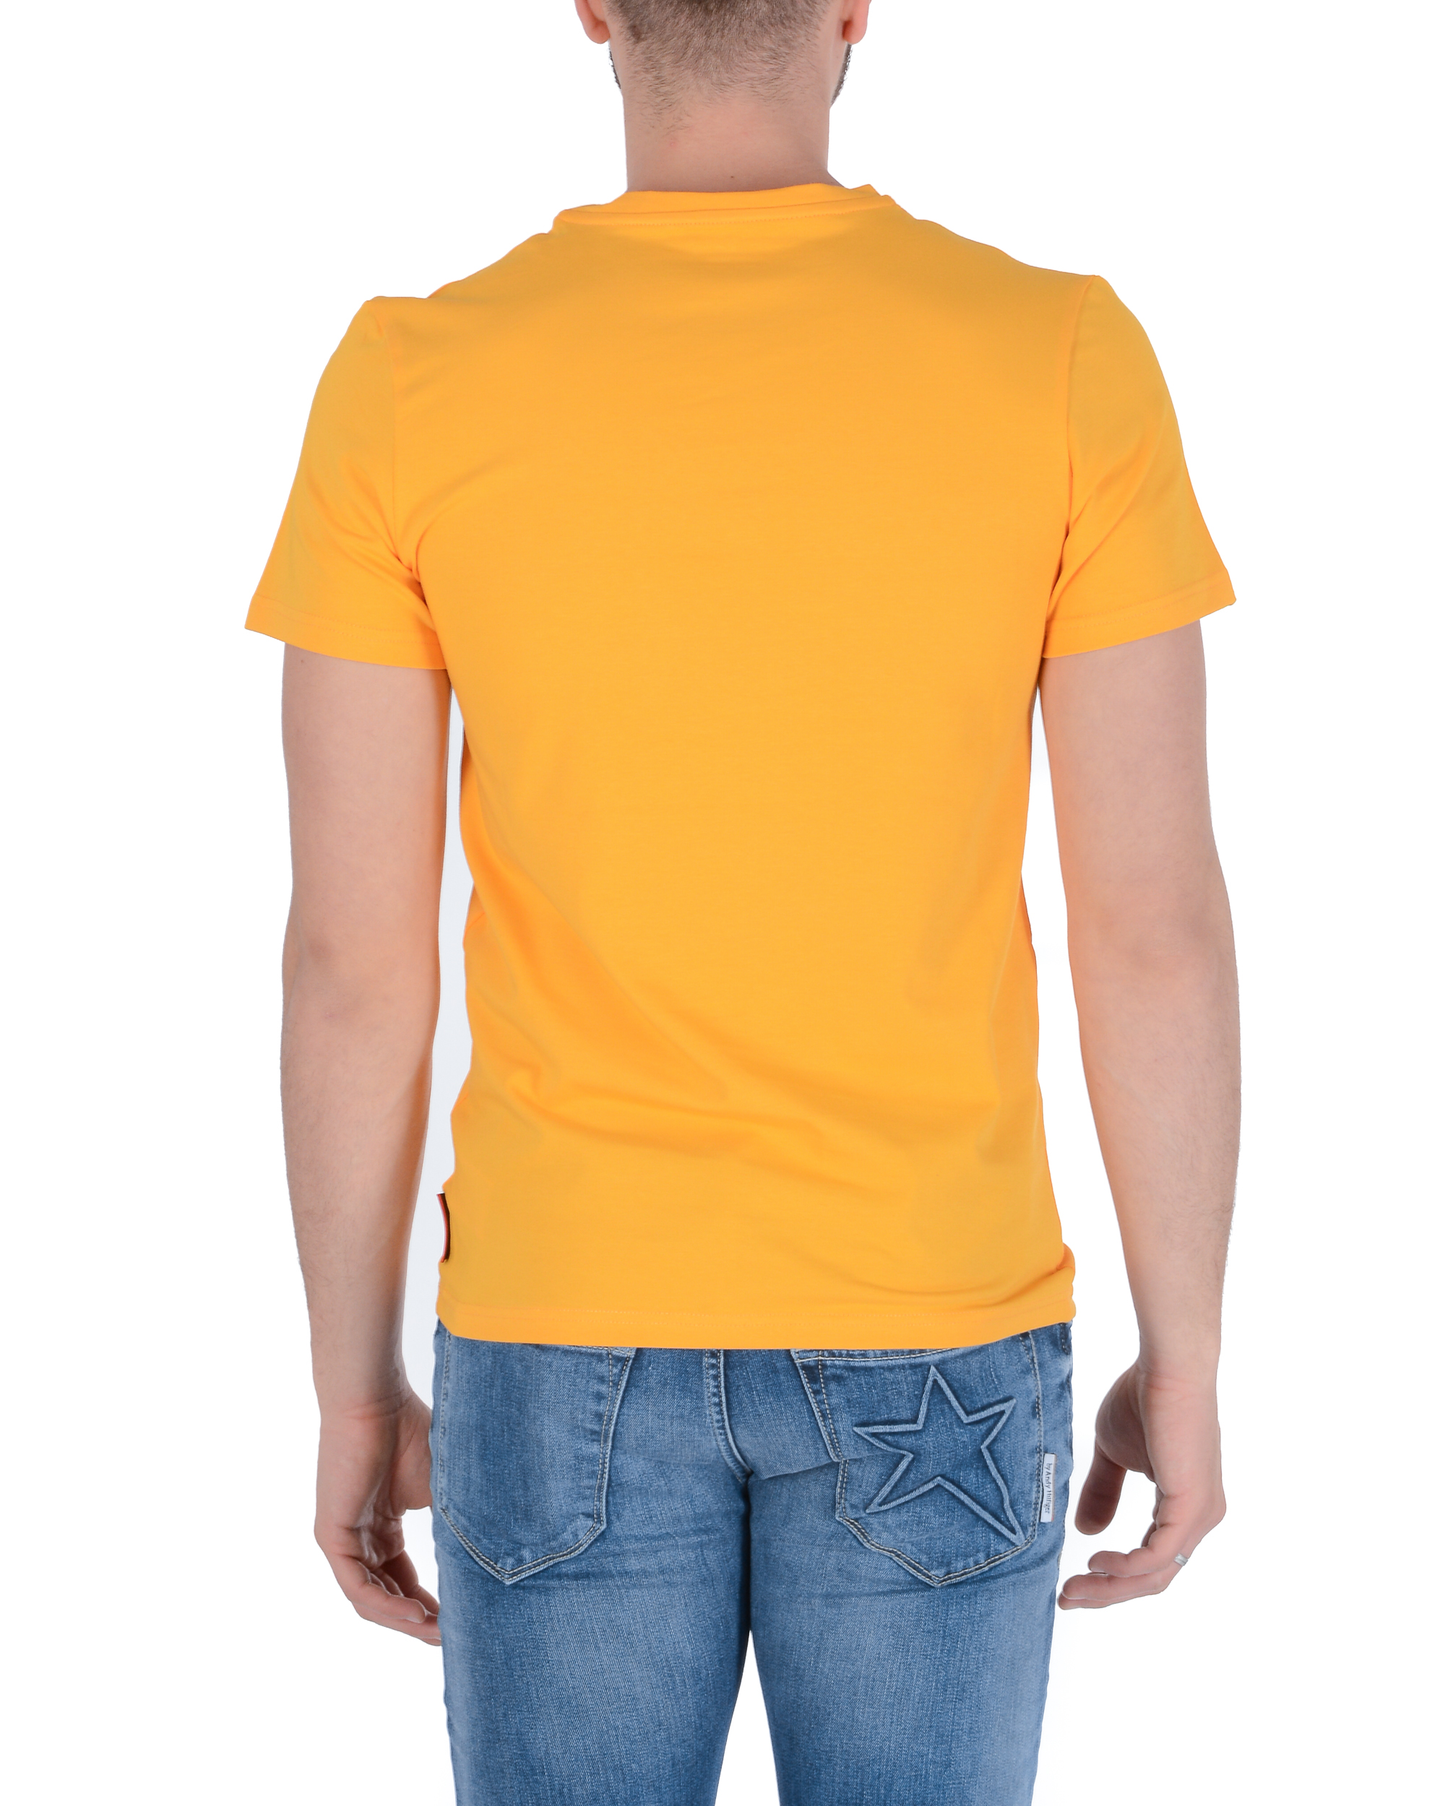 Andrew Charles Mens T-Shirt KEITA YELLOW S14